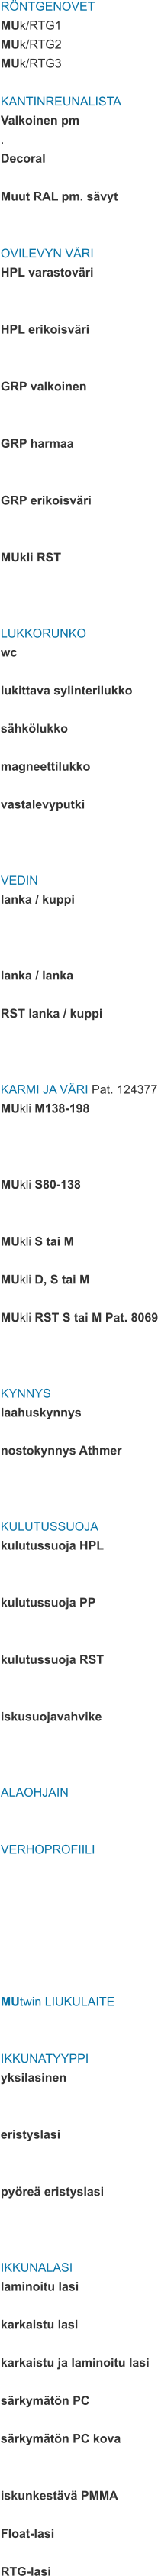 RÖNTGENOVET MUk/RTG1 MUk/RTG2 MUk/RTG3  KANTINREUNALISTA Valkoinen pm . Decoral  Muut RAL pm. sävyt   OVILEVYN VÄRI HPL varastoväri   HPL erikoisväri   GRP valkoinen   GRP harmaa   GRP erikoisväri   MUkli RST    LUKKORUNKO wc  lukittava sylinterilukko  sähkölukko  magneettilukko  vastalevyputki    VEDIN lanka / kuppi    lanka / lanka  RST lanka / kuppi    KARMI JA VÄRI Pat. 124377 MUkli M138-198    MUkli S80-138   MUkli S tai M  MUkli D, S tai M  MUkli RST S tai M Pat. 8069    KYNNYS laahuskynnys  nostokynnys Athmer    KULUTUSSUOJA kulutussuoja HPL   kulutussuoja PP   kulutussuoja RST   iskusuojavahvike    ALAOHJAIN   VERHOPROFIILI        MUtwin LIUKULAITE   IKKUNATYYPPI yksilasinen   eristyslasi   pyöreä eristyslasi    IKKUNALASI laminoitu lasi  karkaistu lasi  karkaistu ja laminoitu lasi  särkymätön PC  särkymätön PC kova   iskunkestävä PMMA  Float-lasi  RTG-lasi